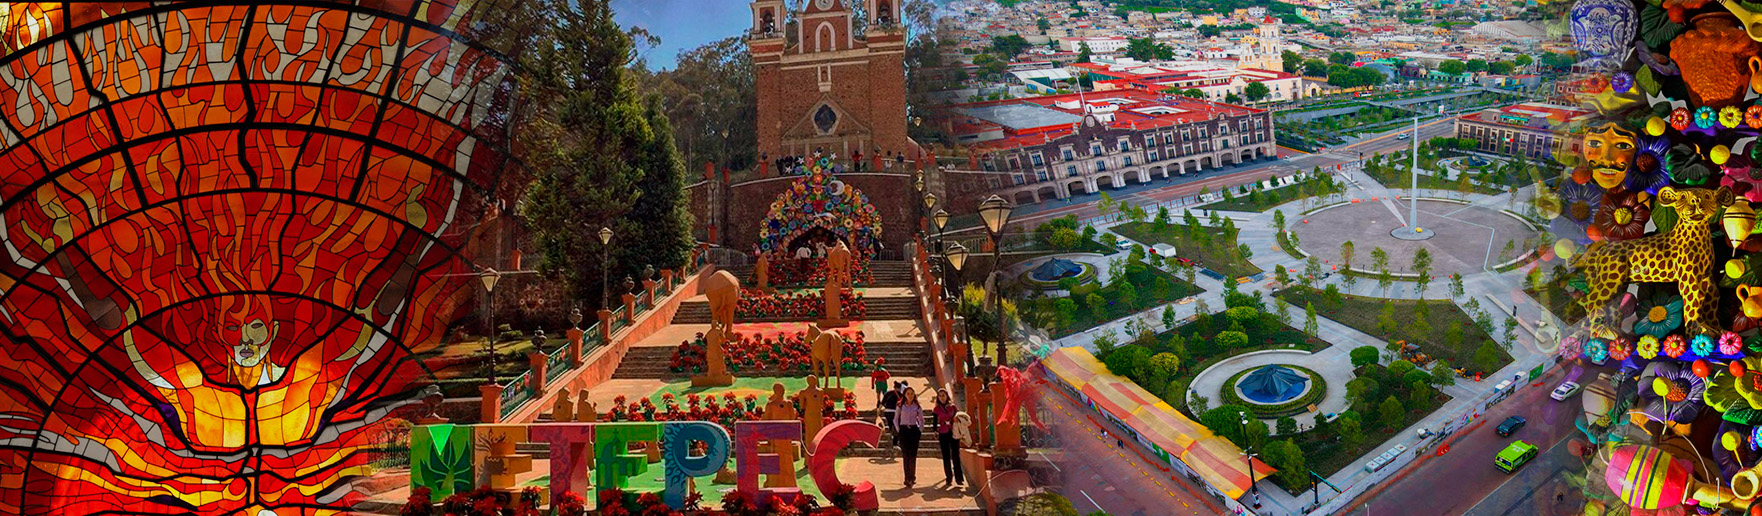 Toluca y Metepec Pueblos con Encanto